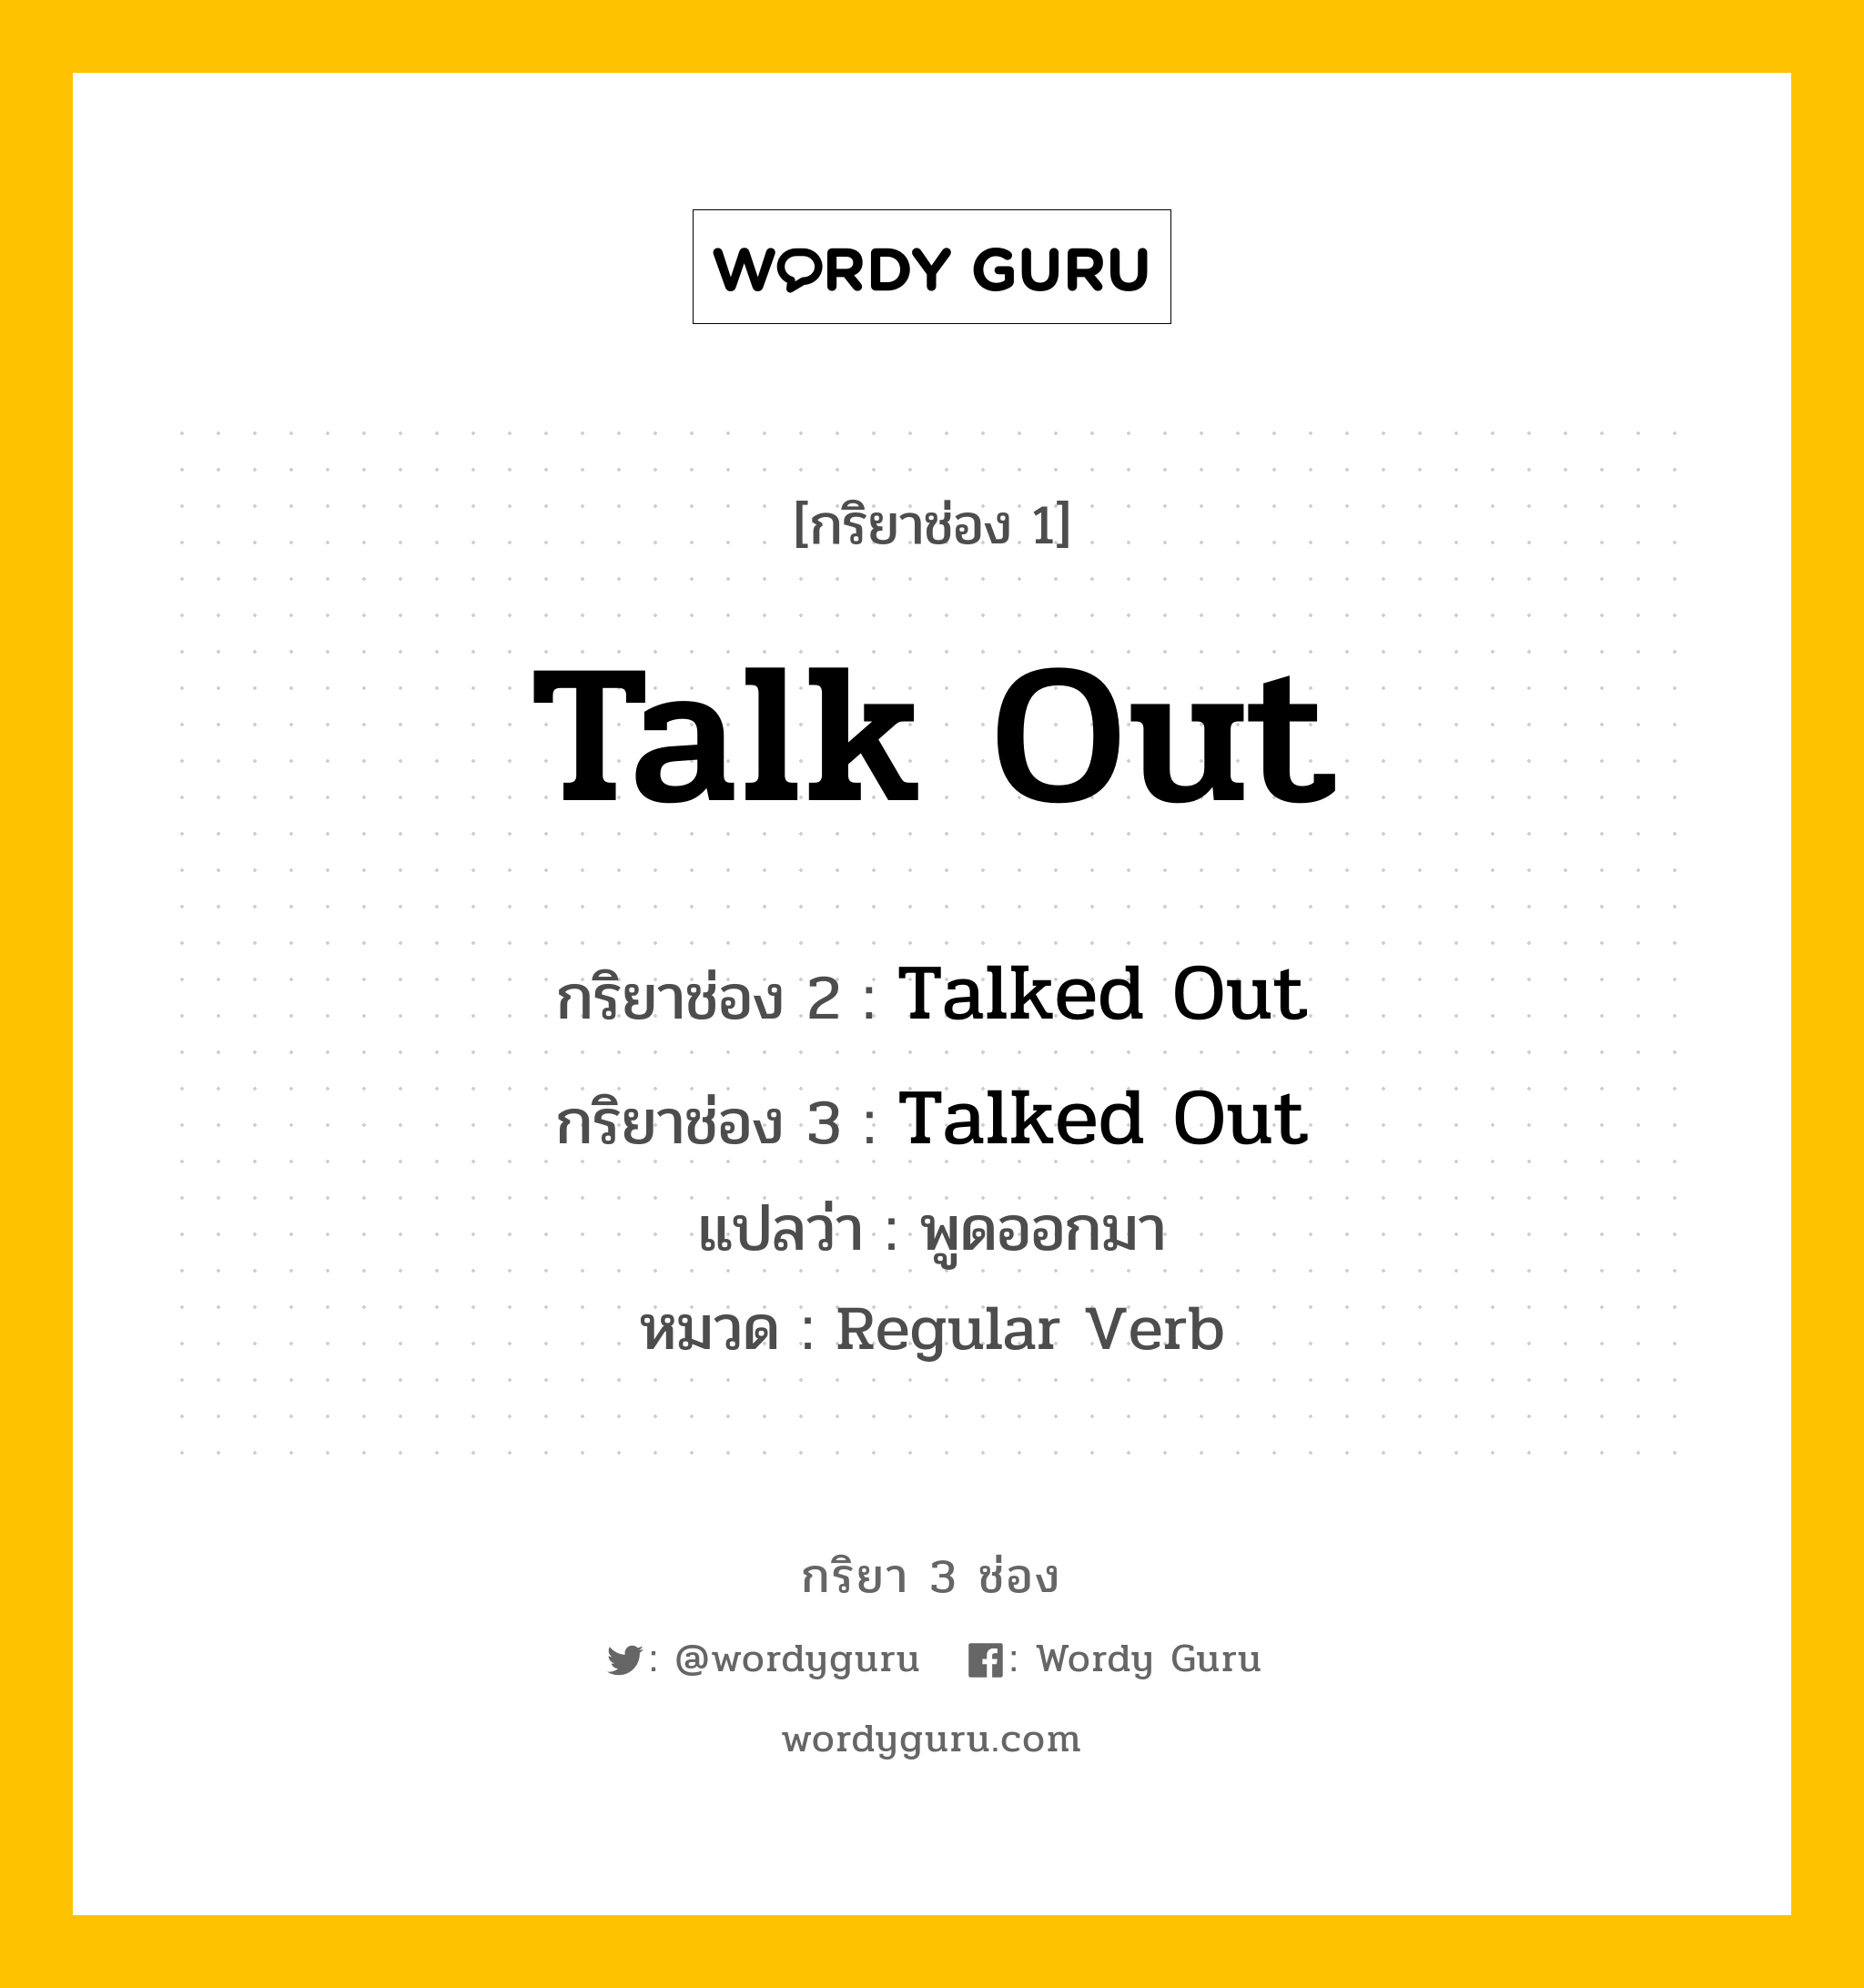 กริยา 3 ช่อง ของ Talk Out คืออะไร? มาดูคำอ่าน คำแปลกันเลย, กริยาช่อง 1 Talk Out กริยาช่อง 2 Talked Out กริยาช่อง 3 Talked Out แปลว่า พูดออกมา หมวด Regular Verb หมวด Regular Verb